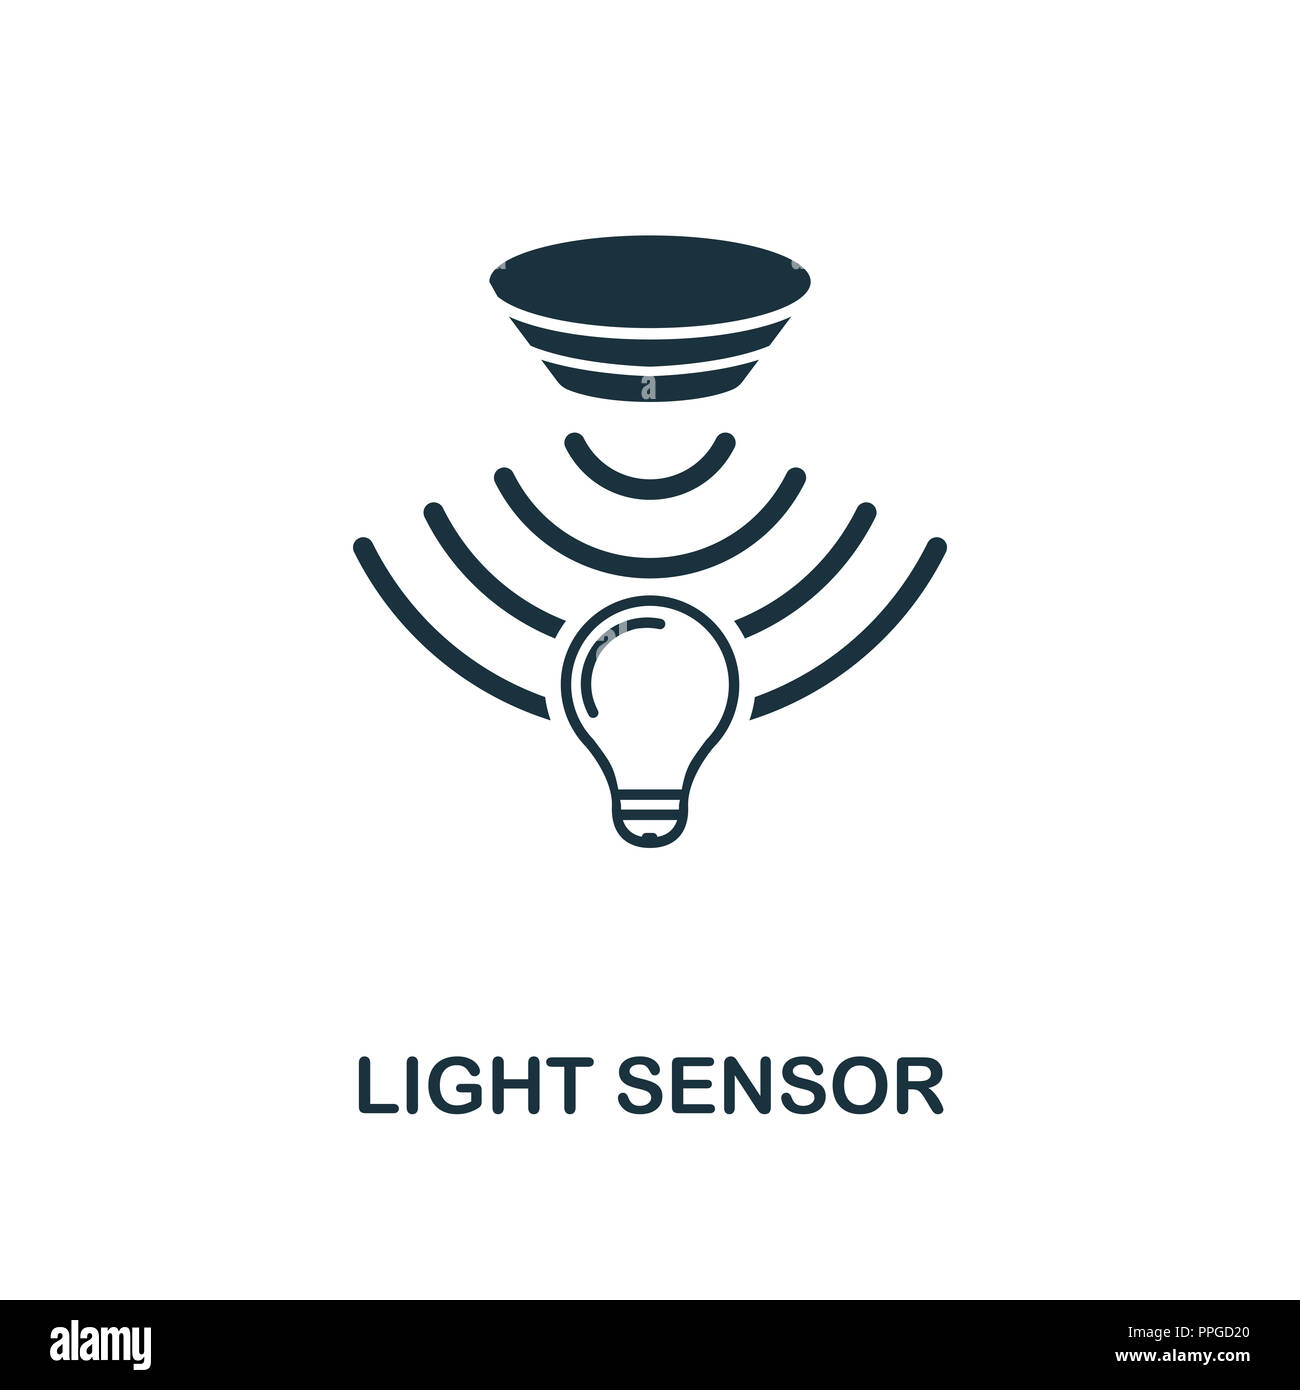 Qué Es Un Sensor De Luminosidad Y Cómo Se Instala? | sptc.edu.bd